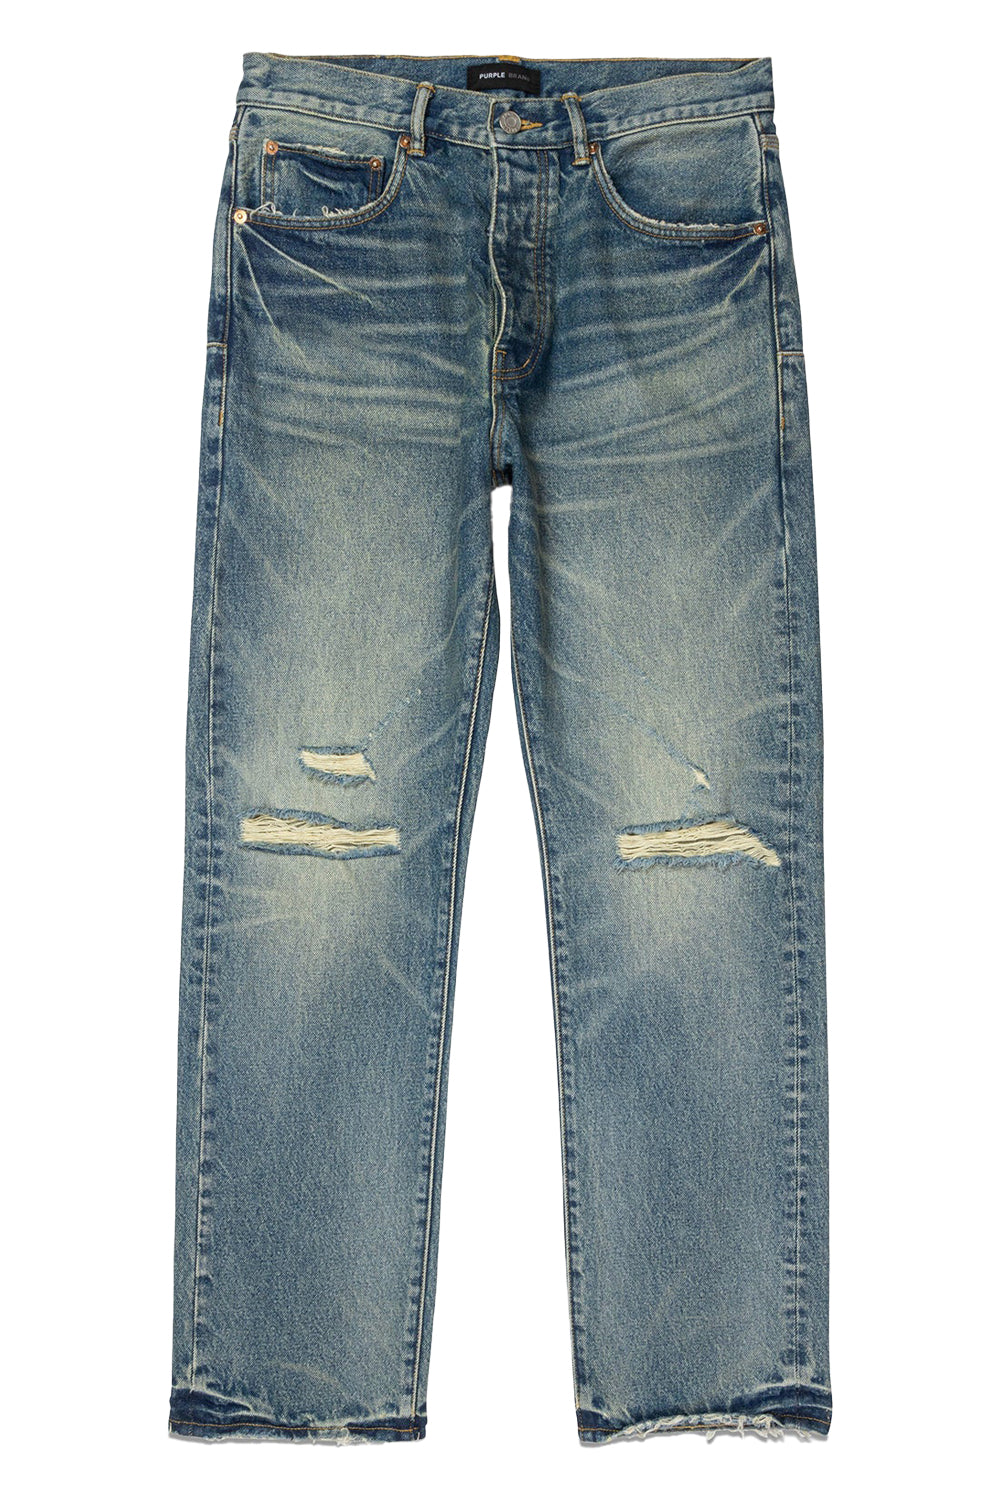 Purple Brand Jeans Vintage Knee Slit P011-VKSM124